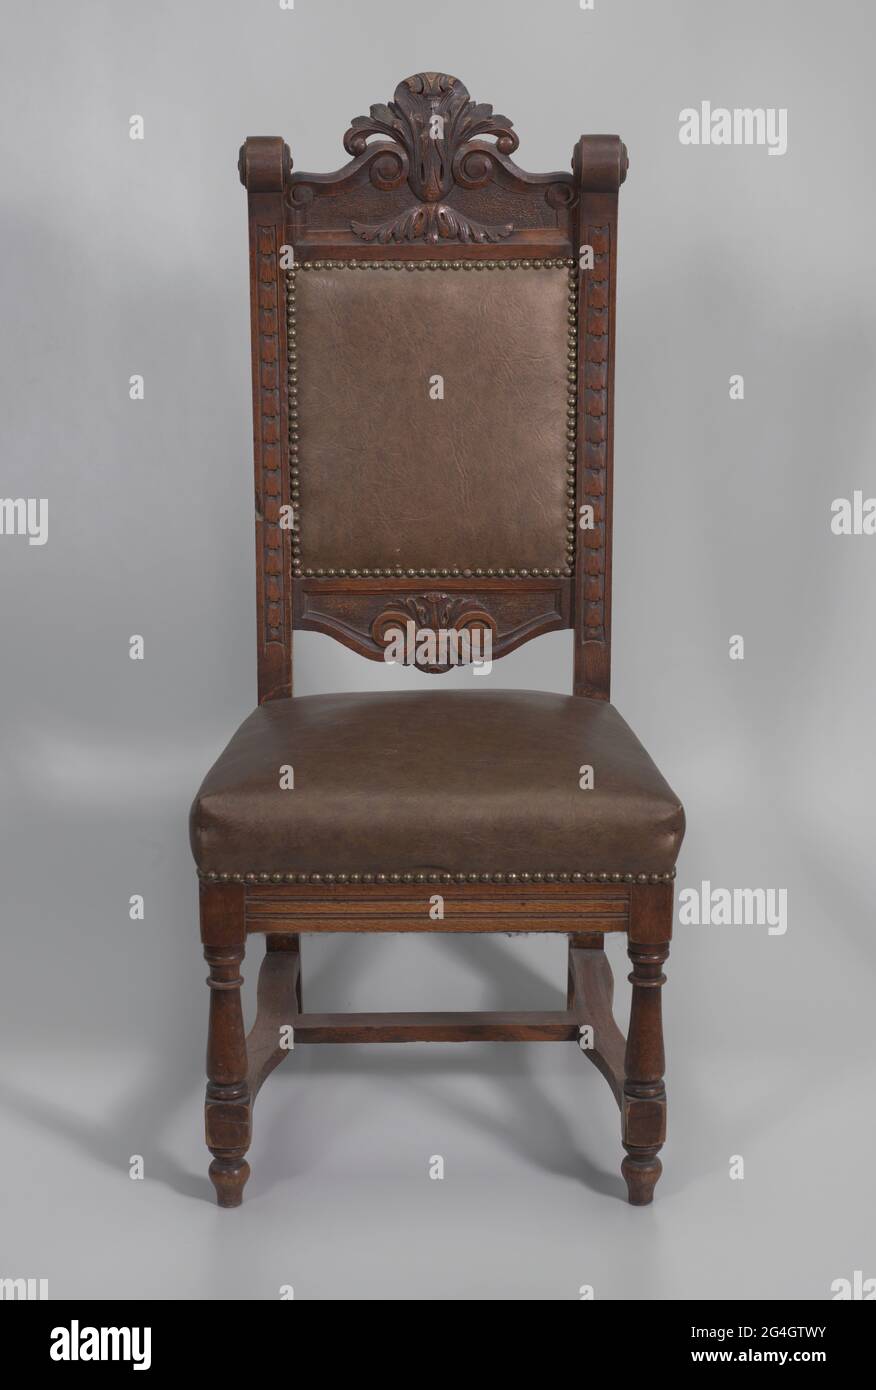 Una sedia in legno a pulpito con finitura scura. La sedia è dotata di  quattro gambe con le gambe posteriori che si estendono per l'intera altezza  dello schienale. Le gambe anteriori sono